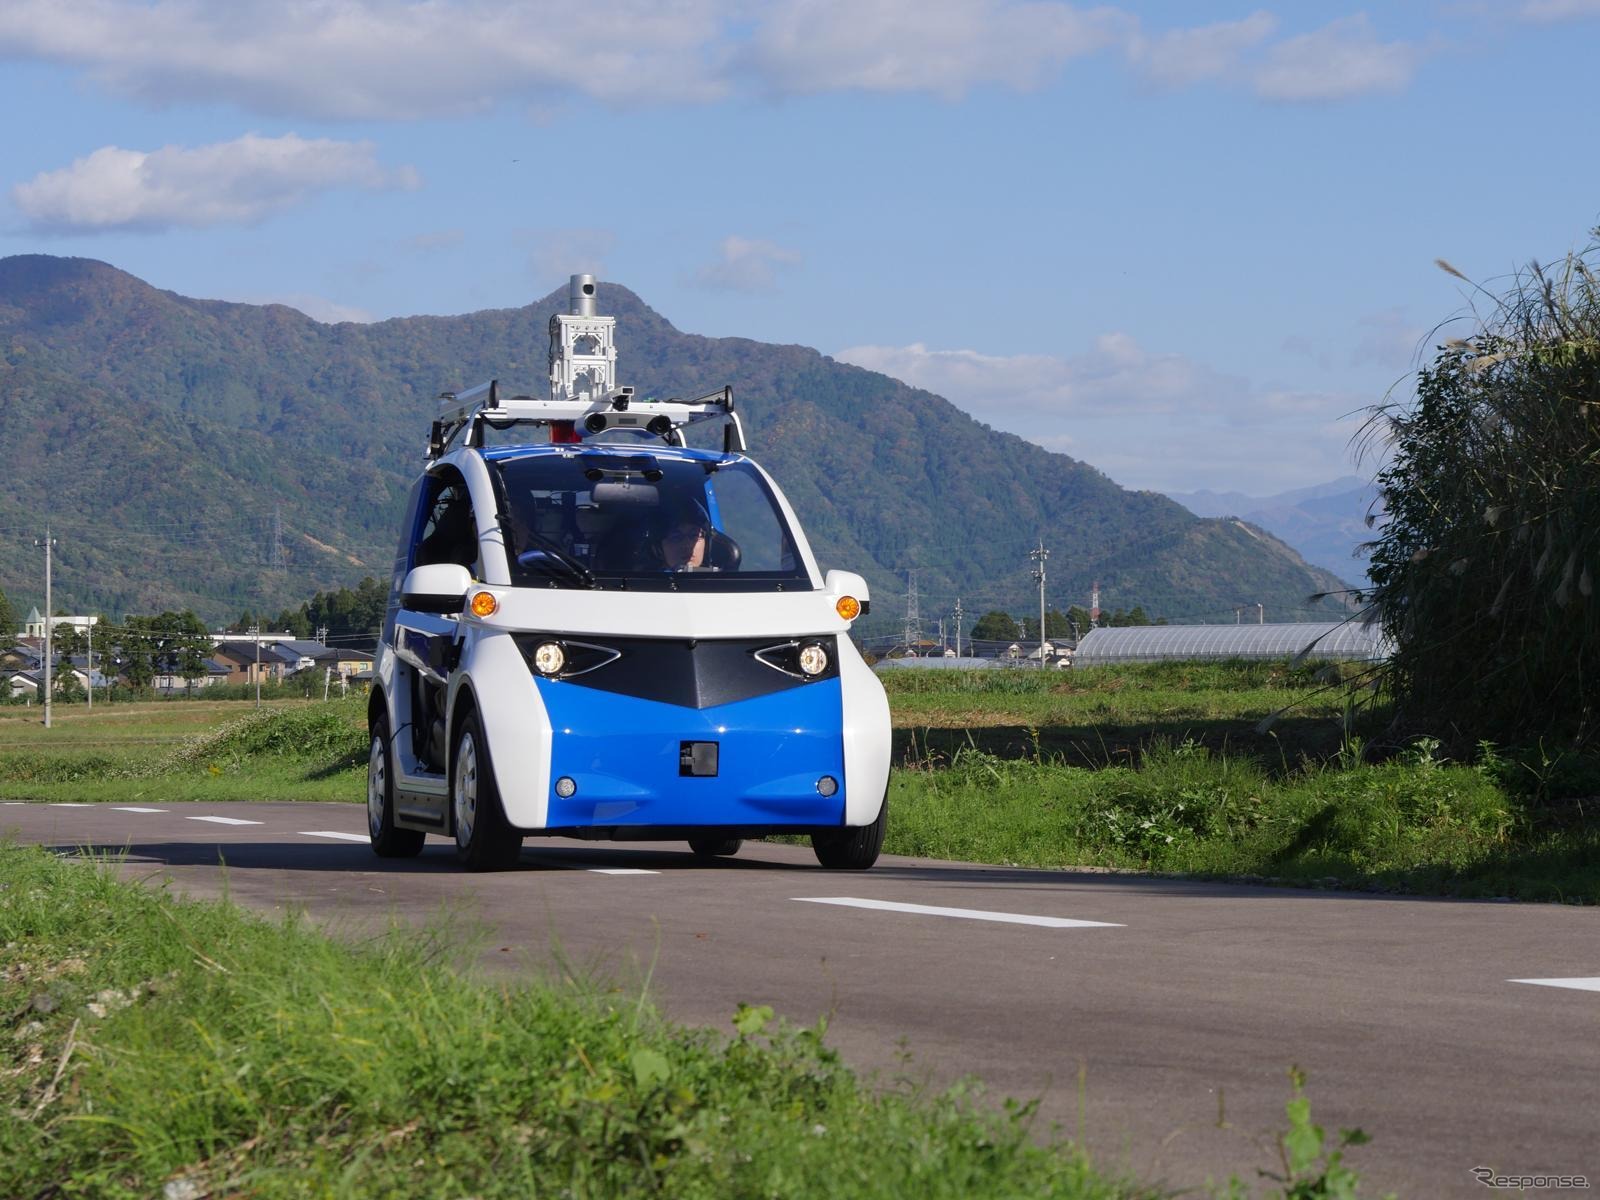 永平寺参ろーどで走行試験中の自動運転EVコミューター。全長2.5m・2人乗りの小型車で、公道に準じた場所での実験は、今回が初めてという。